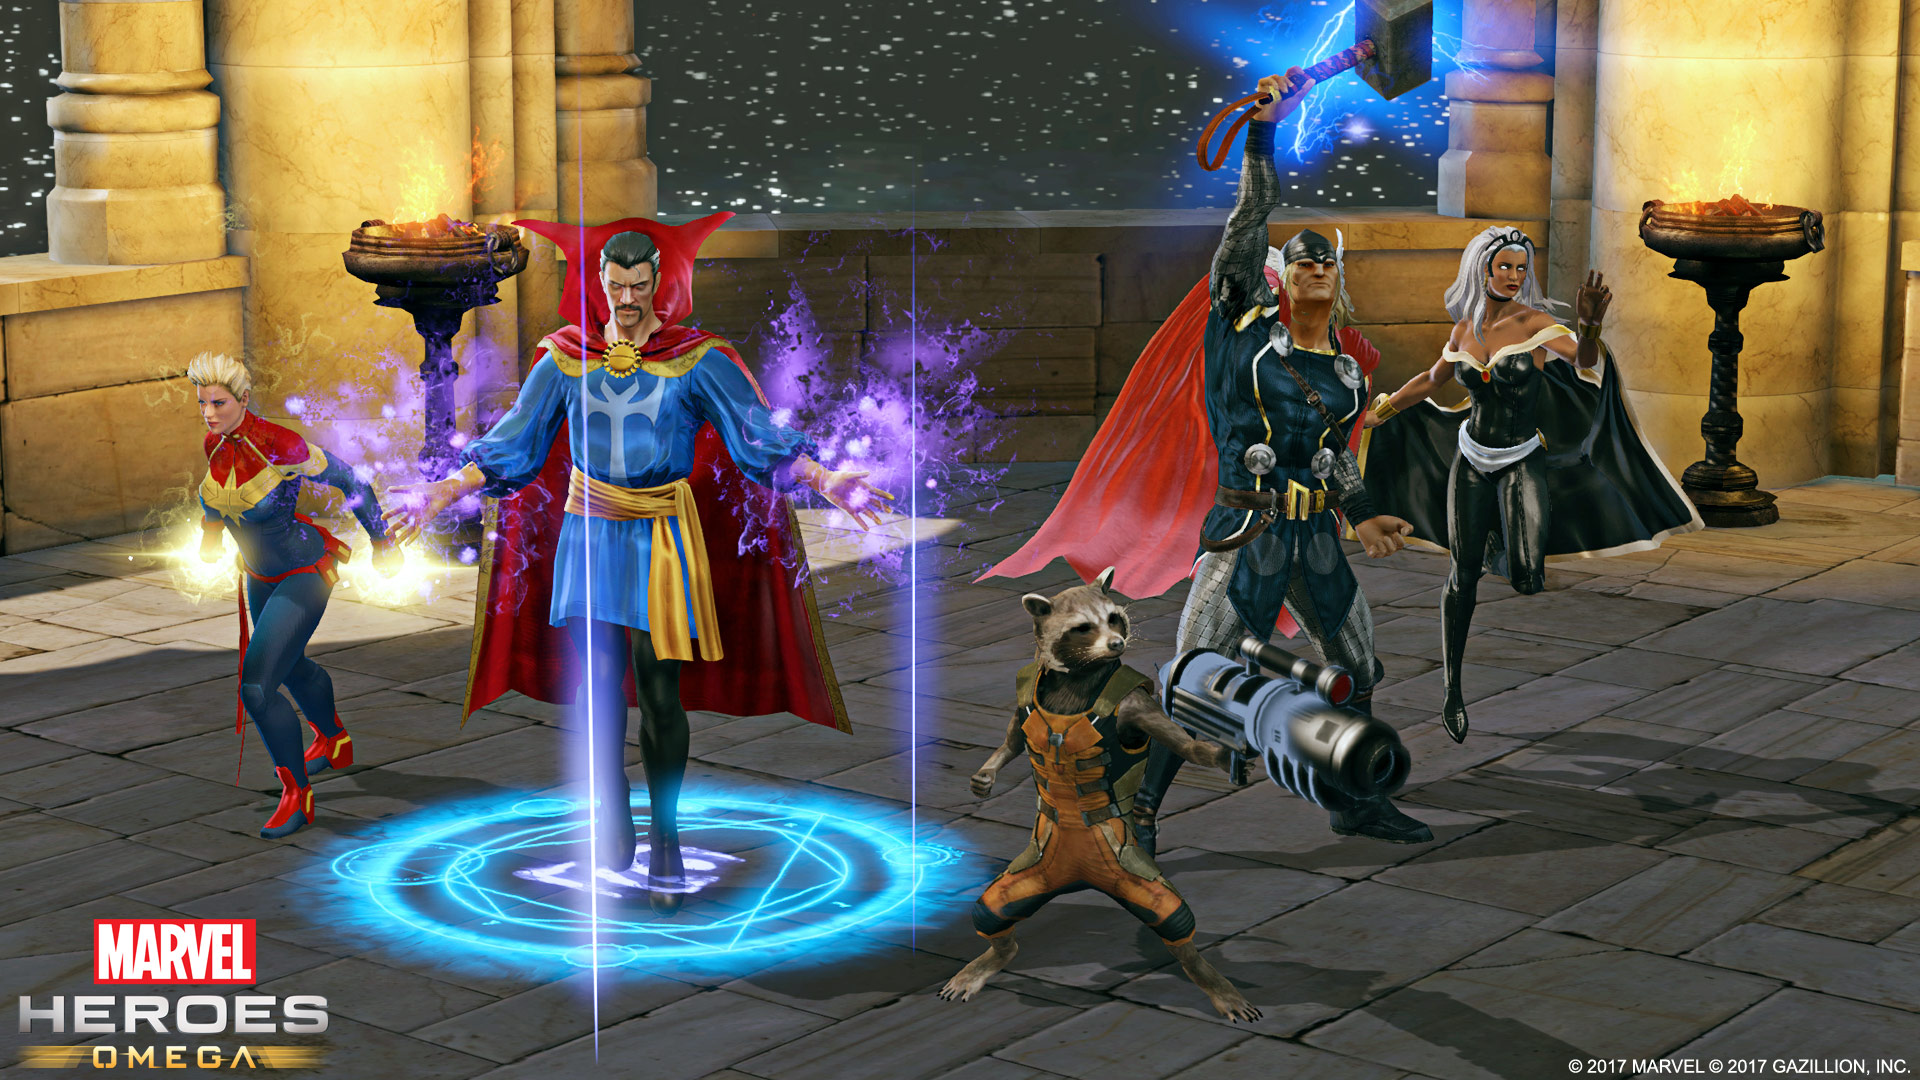 Marvel Heroes Omega screenshot